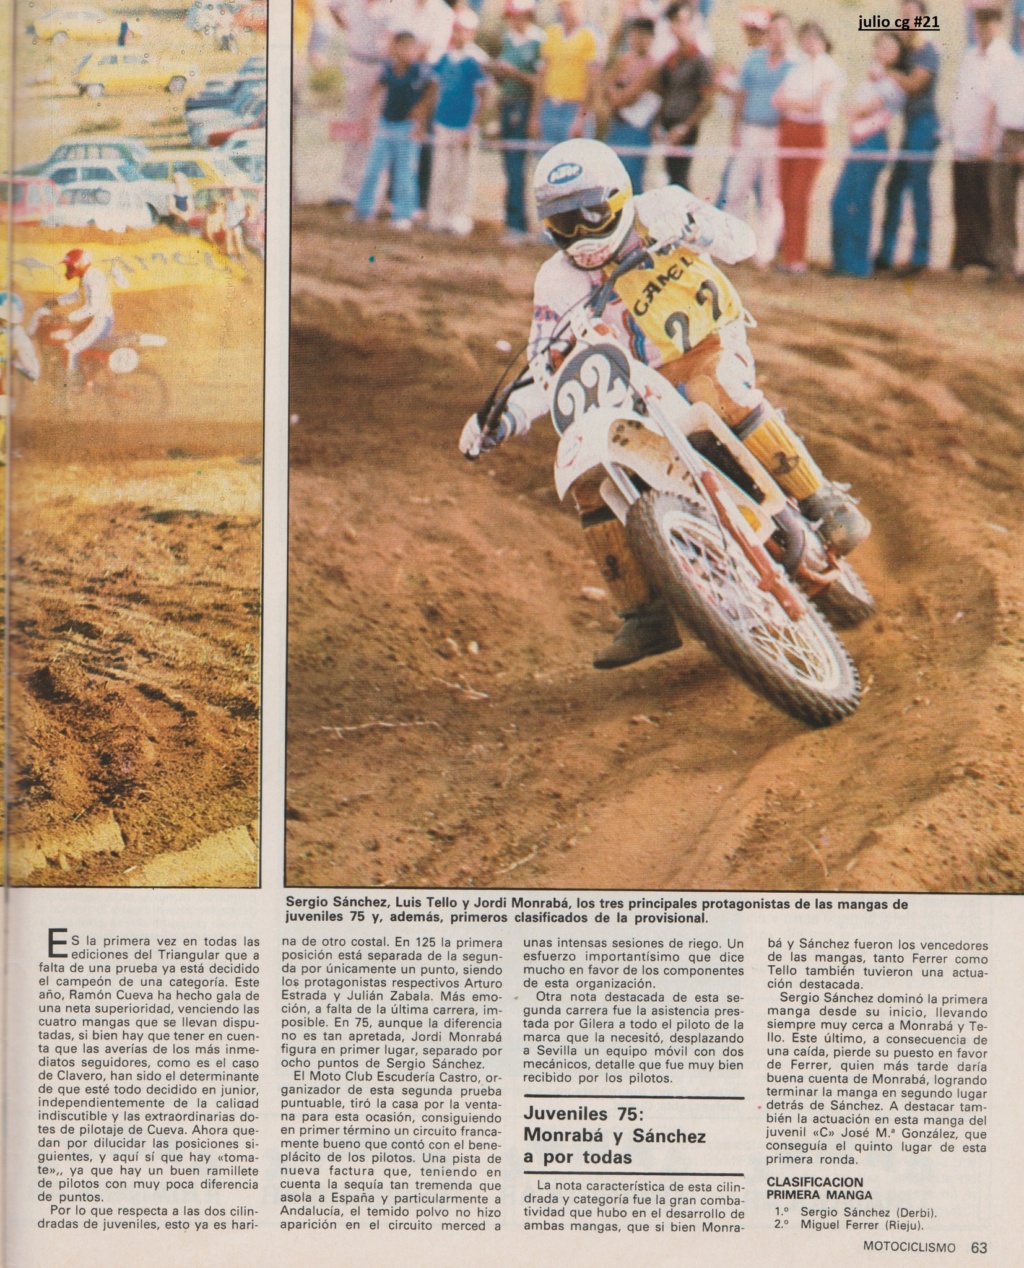 Motociclismo 769 - Septiembre 1982 - Triangular Camel 35049110